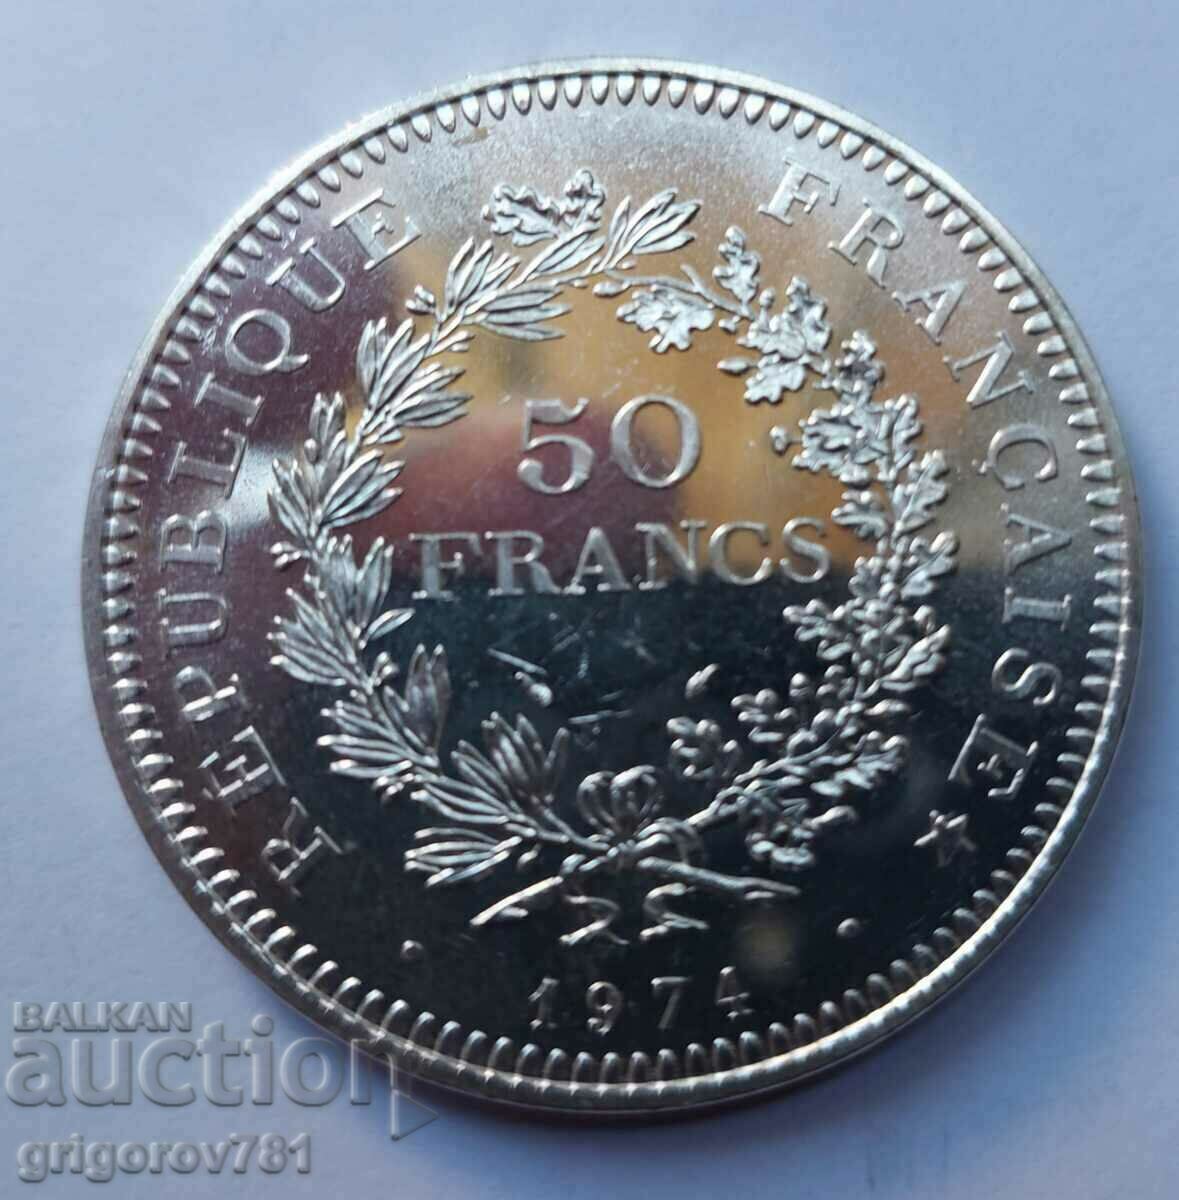 Ασήμι 50 Φράγκων Γαλλία 1974 - Ασημένιο νόμισμα #24